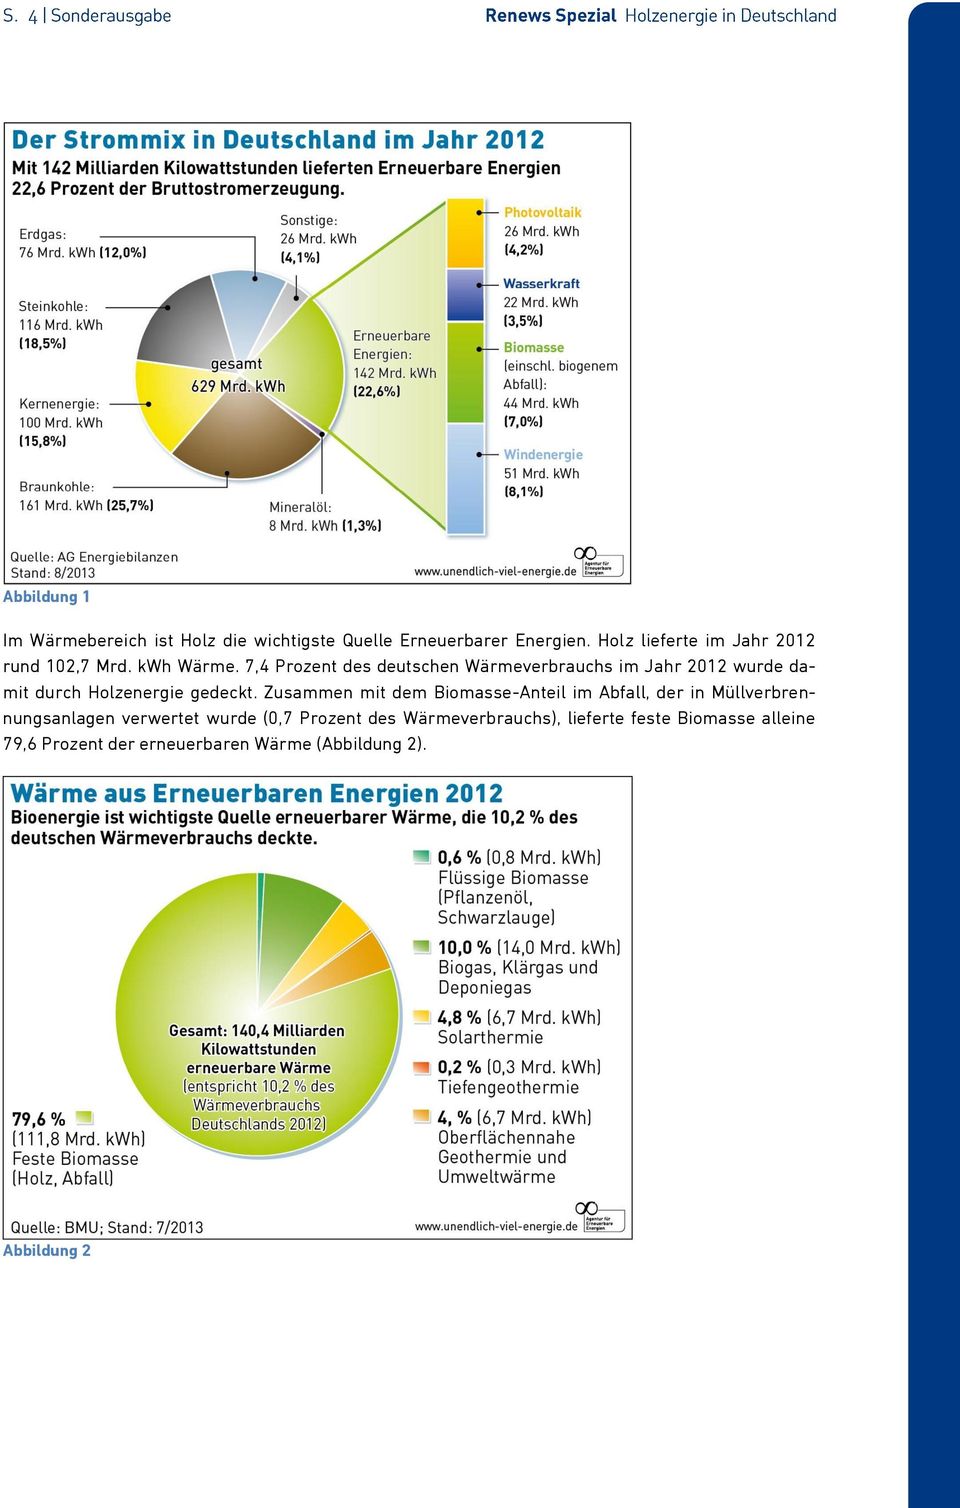 7,4 Prozent des deutschen Wärmeverbrauchs im Jahr 2012 wurde damit durch Holzenergie gedeckt.